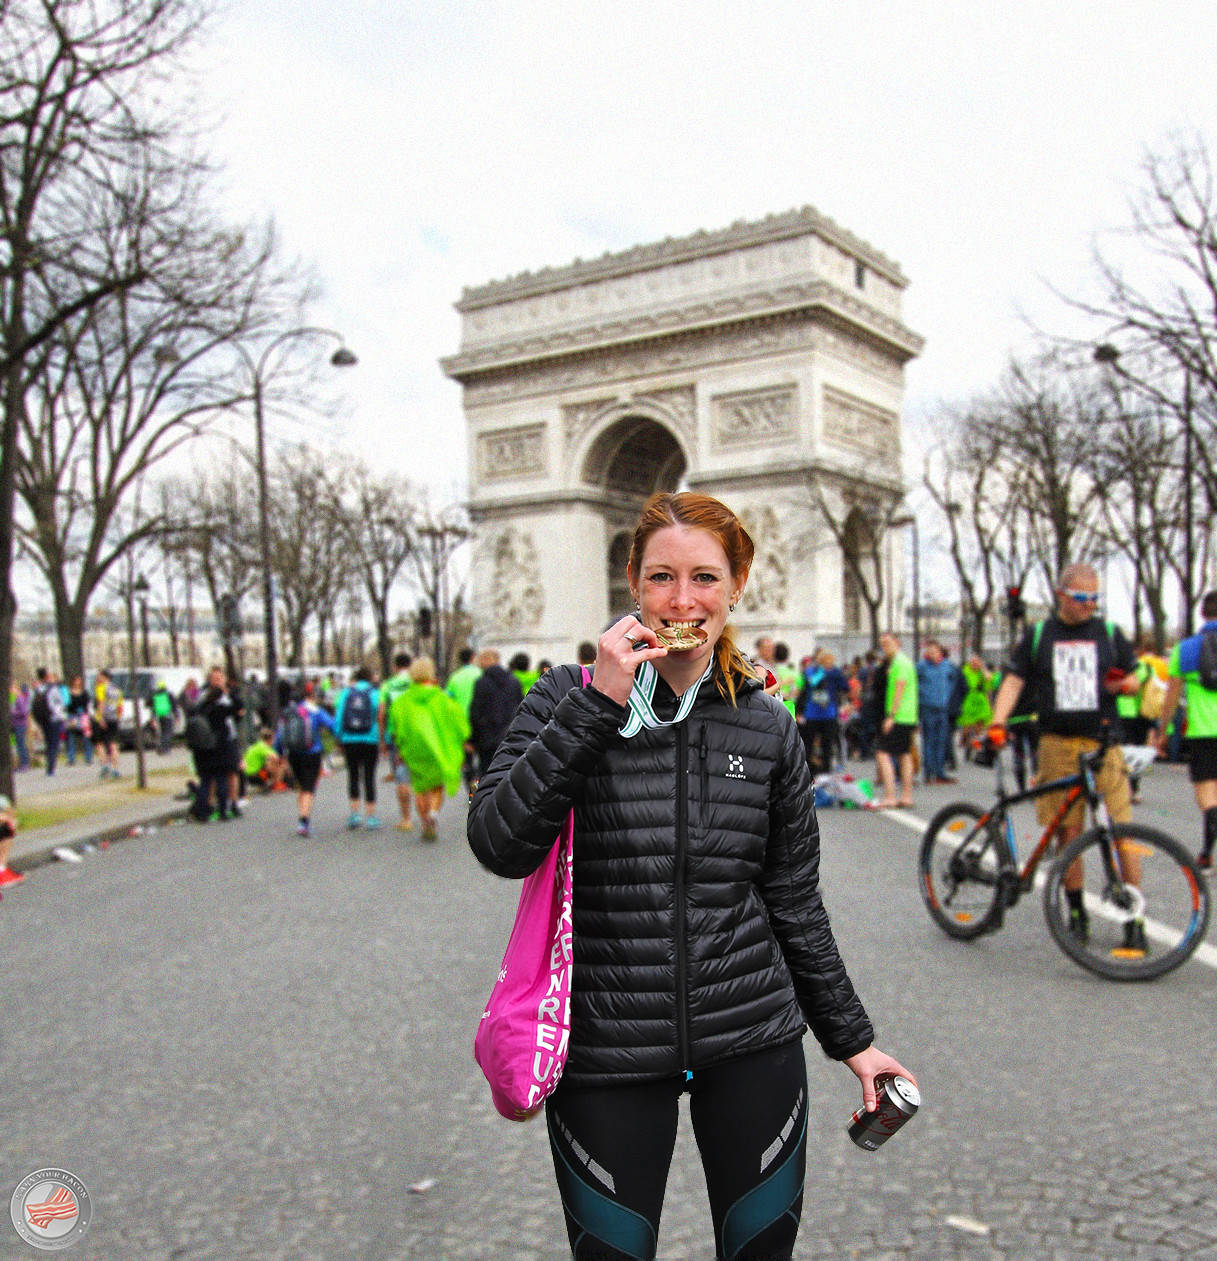 [:de]Paris Marathon: “Ich höre jetzt einfach auf!”[:]